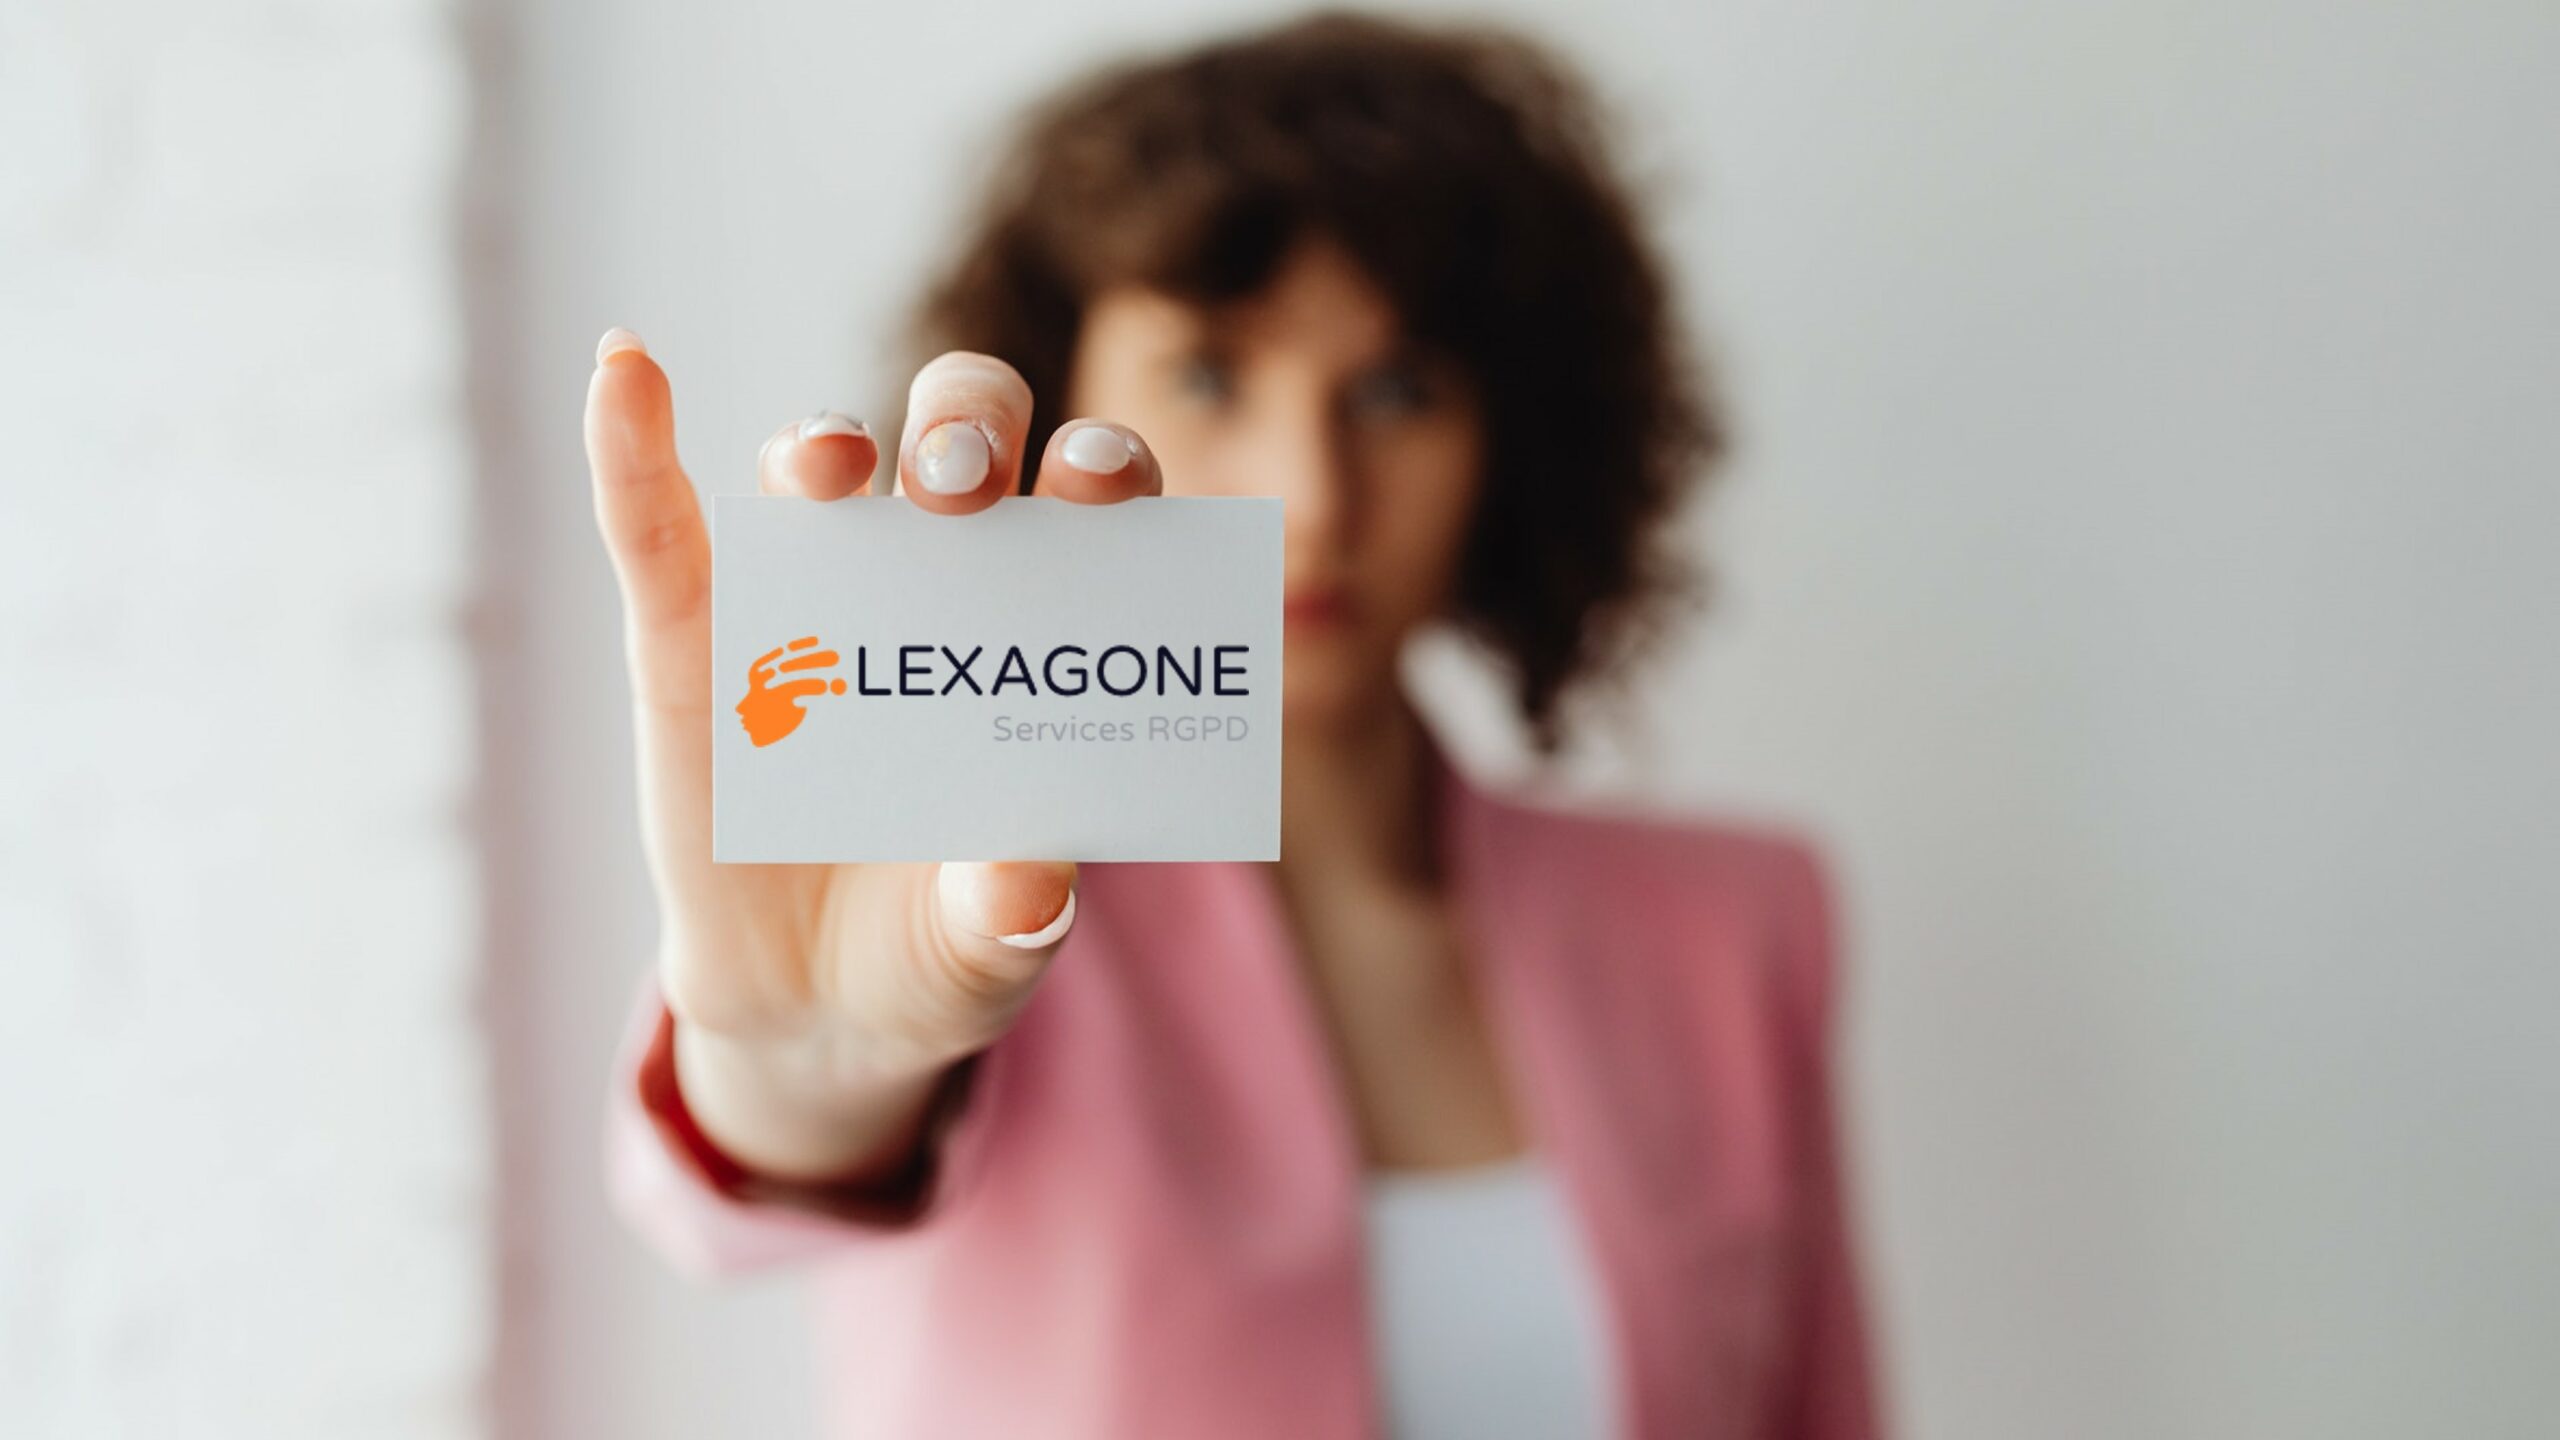 Lexagone - Services RGPD, DPO externe & mise en conformité RGPD